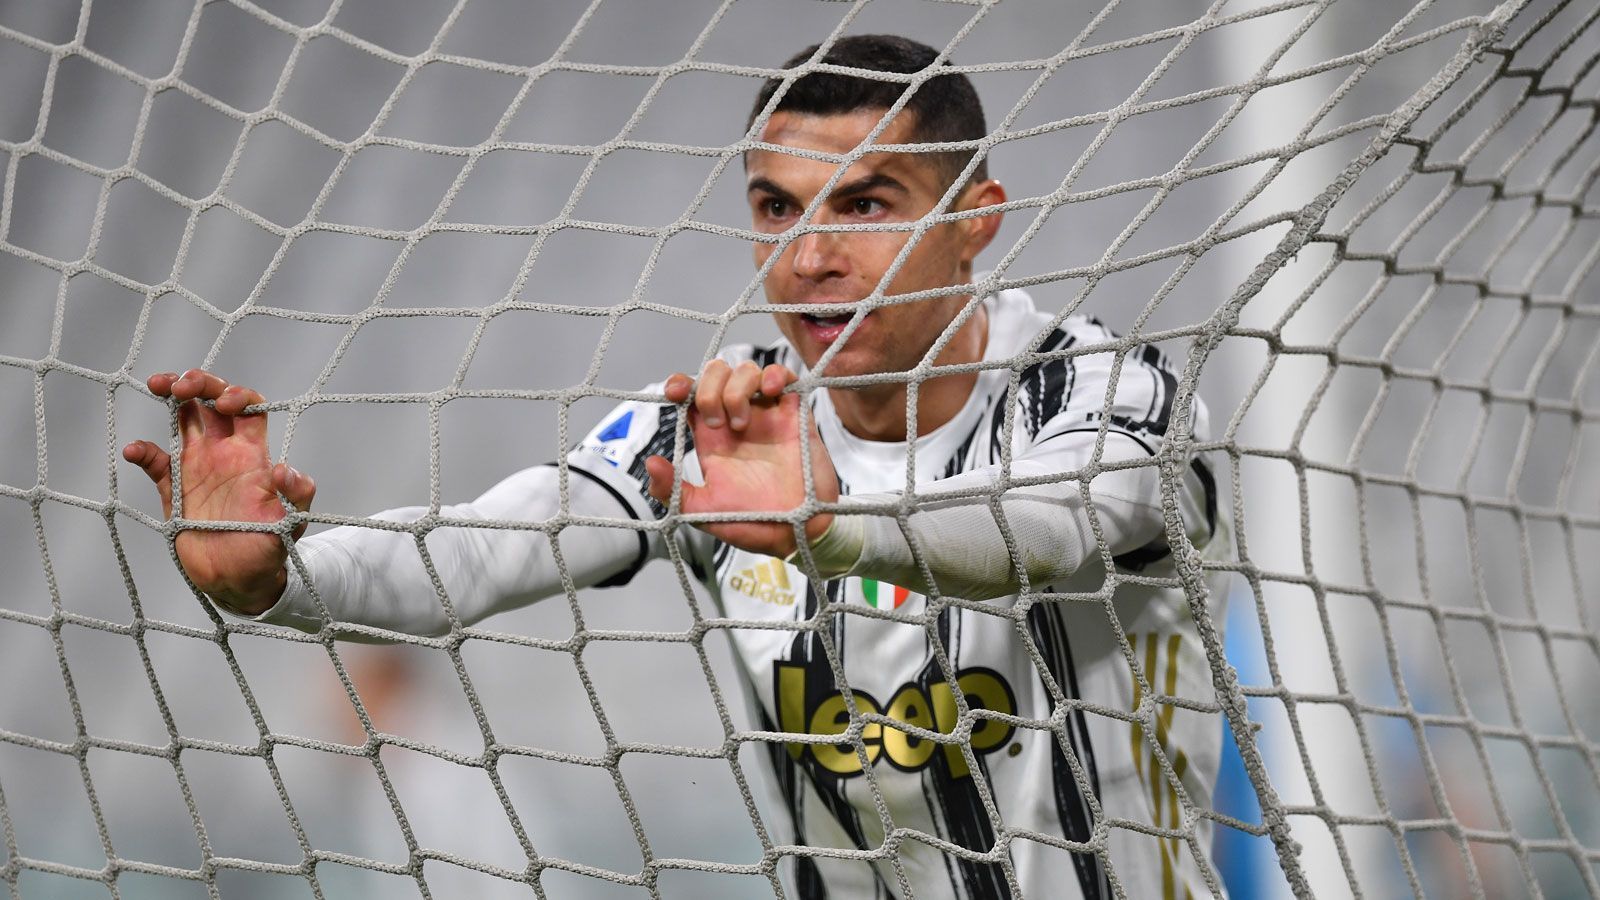 
                <strong>Cristiano Ronaldo (Juventus Turin)</strong><br>
                Vertrag endet: 2022Auch um Cristiano Ronaldo ranken sich wieder Gerüchte bezüglich eines Abschieds von Juventus Turin, was mit dem jähen Champions-League-Aus im Achtelfinale und der enttäuschenden Saison in der Serie A zusammenhängt. 2018 war "CR7" von Madrid ins Piemont gezogen, um auch mit der "Alten Dame" nach dem Henkelpott zu greifen. Doch der scheint unerreichbar. Nach dem dritten Scheitern mehren sich auch die kritischen Stimmen, die den Portugiesen ins Visier nehmen. Tenor: Bei einem Umbruch stehe der Routinier mehr im Weg als dass er nützlich wäre. Sicher ist: Ablöse würde Juve nur noch in diesem Sommer generieren können, sollte es nicht zur Vertragsverlängerung kommen. Auch hier werden bereits die üblichen Namen als mögliche Abnehmer genannt: Paris St. Germain, Manchester City oder Manchester United - bei den "Red Devils" ging Ronaldos Stern einst so richtig auf.
              